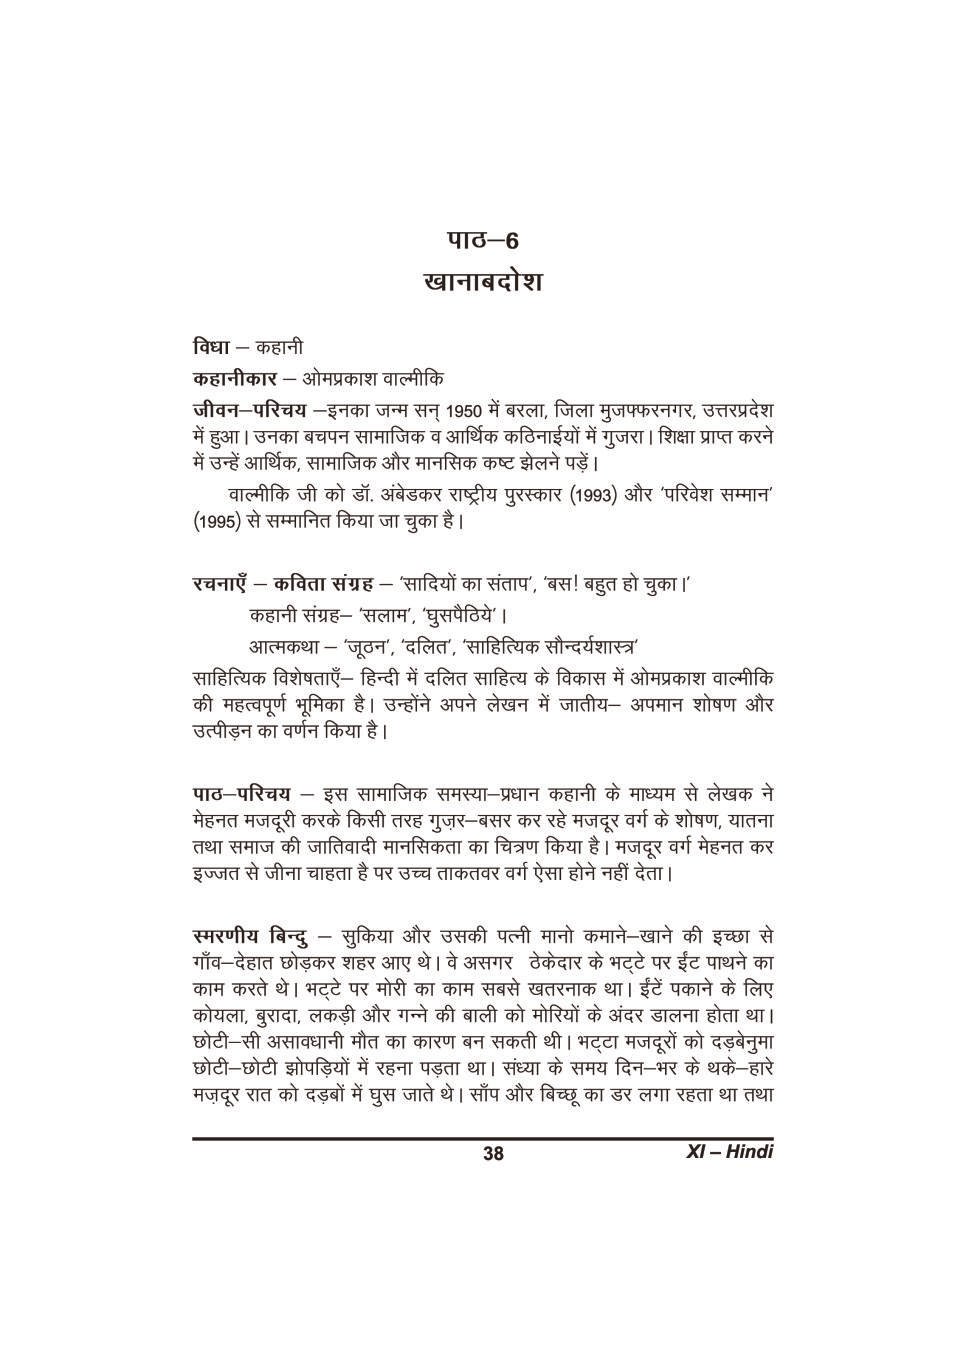 कक्षा 11 हिंदी के नोट्स - खानाबदोश - Page 1